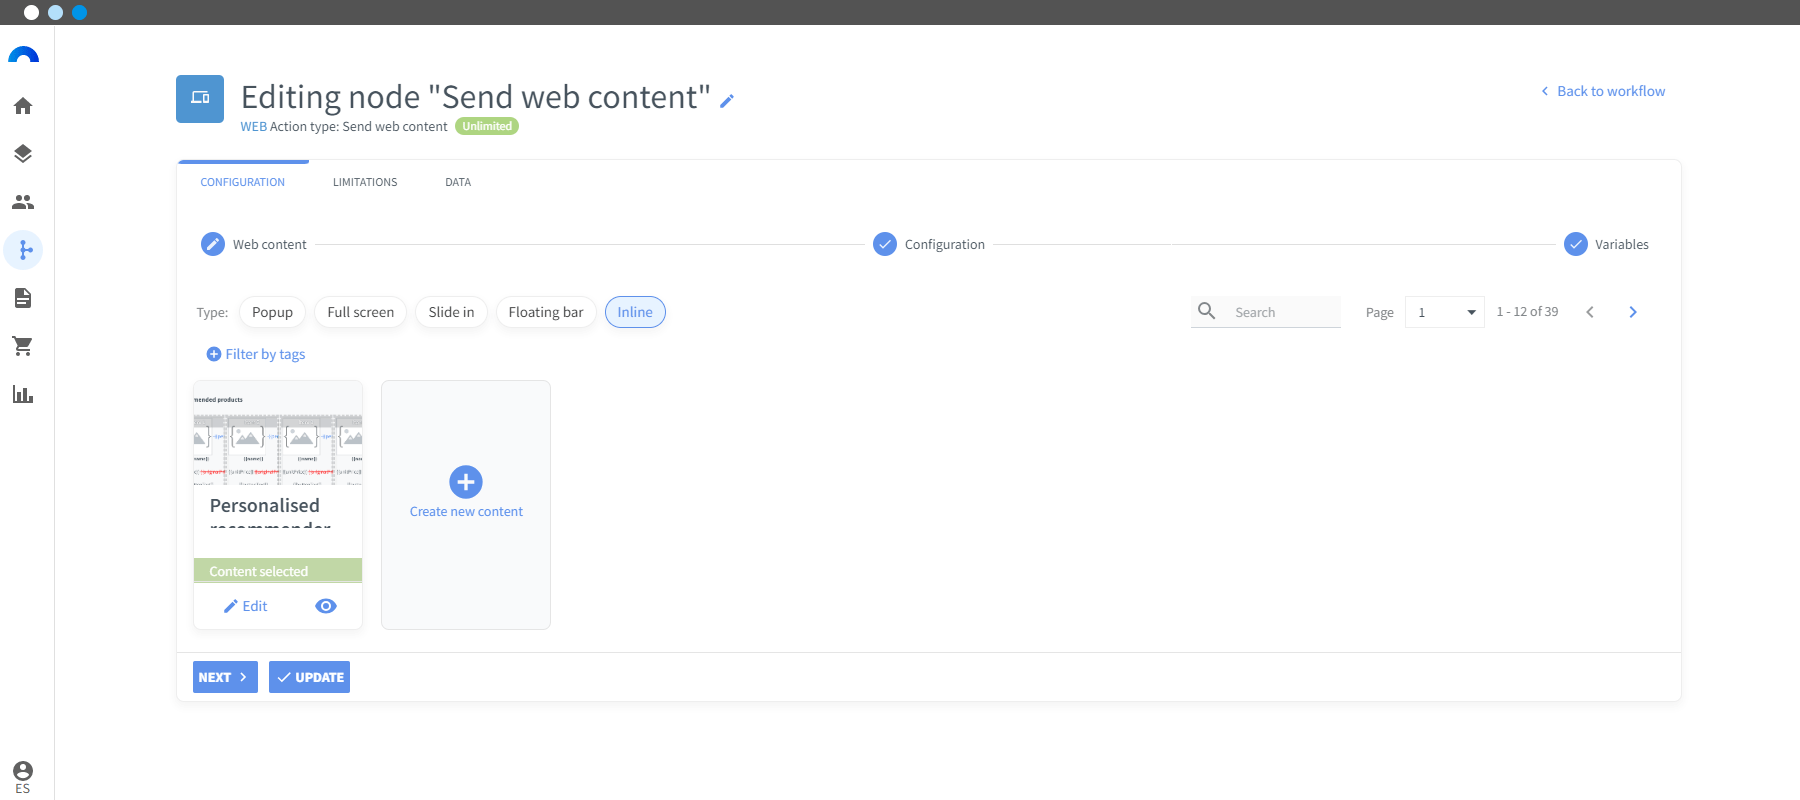 Test ABX recomendador de productos segundo enviar contenido web-min.png